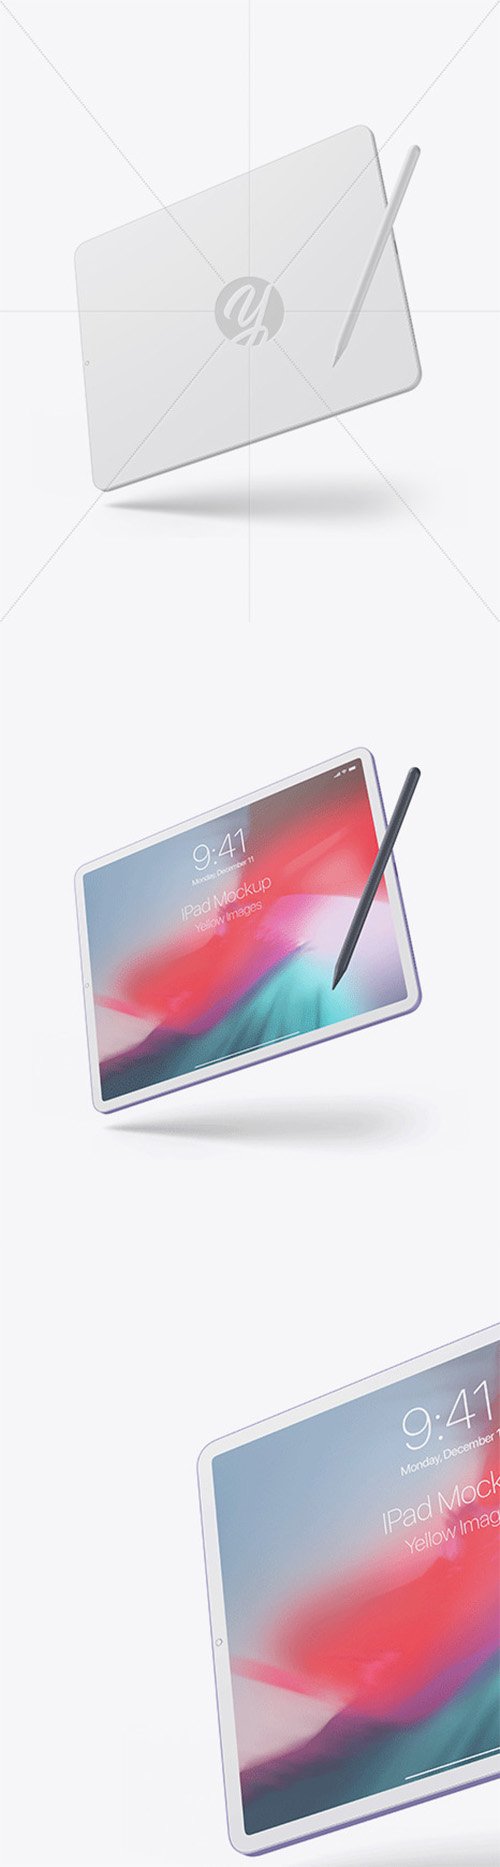 Clay Apple iPad Pro 2018 12.9 Mockup 56998 TIF